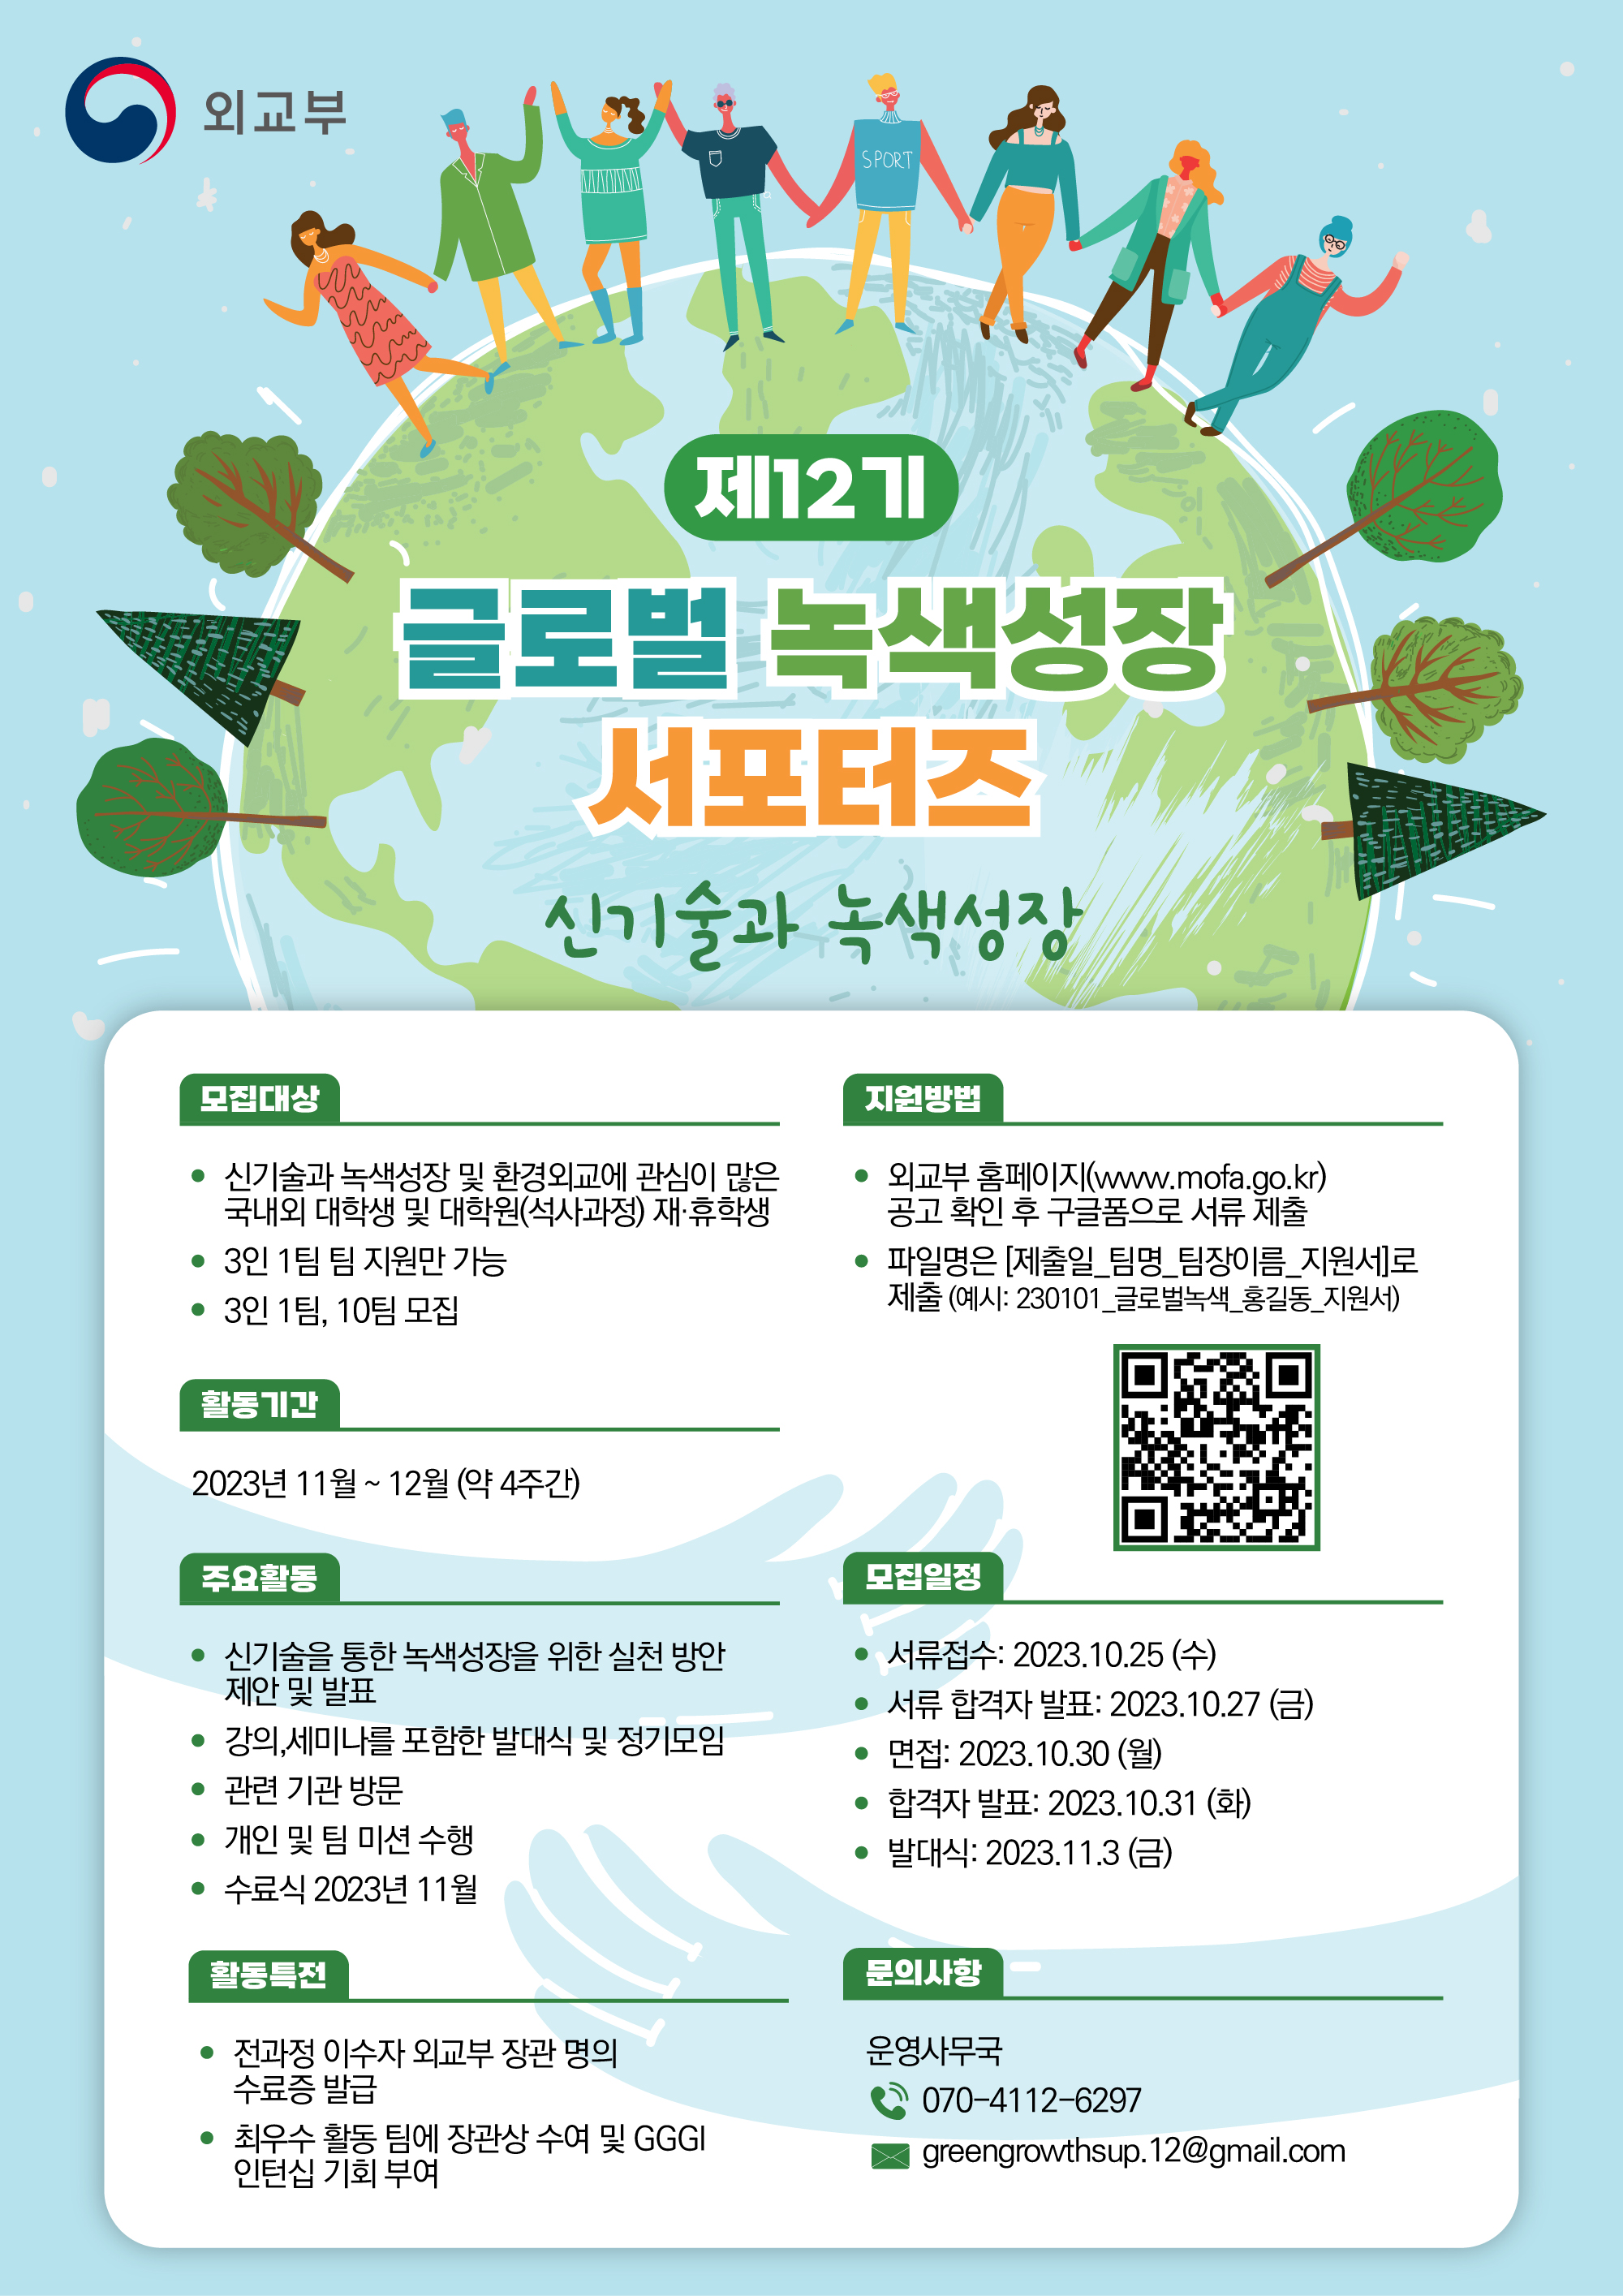 제12기 글로벌 녹색성장 서포터즈 모집